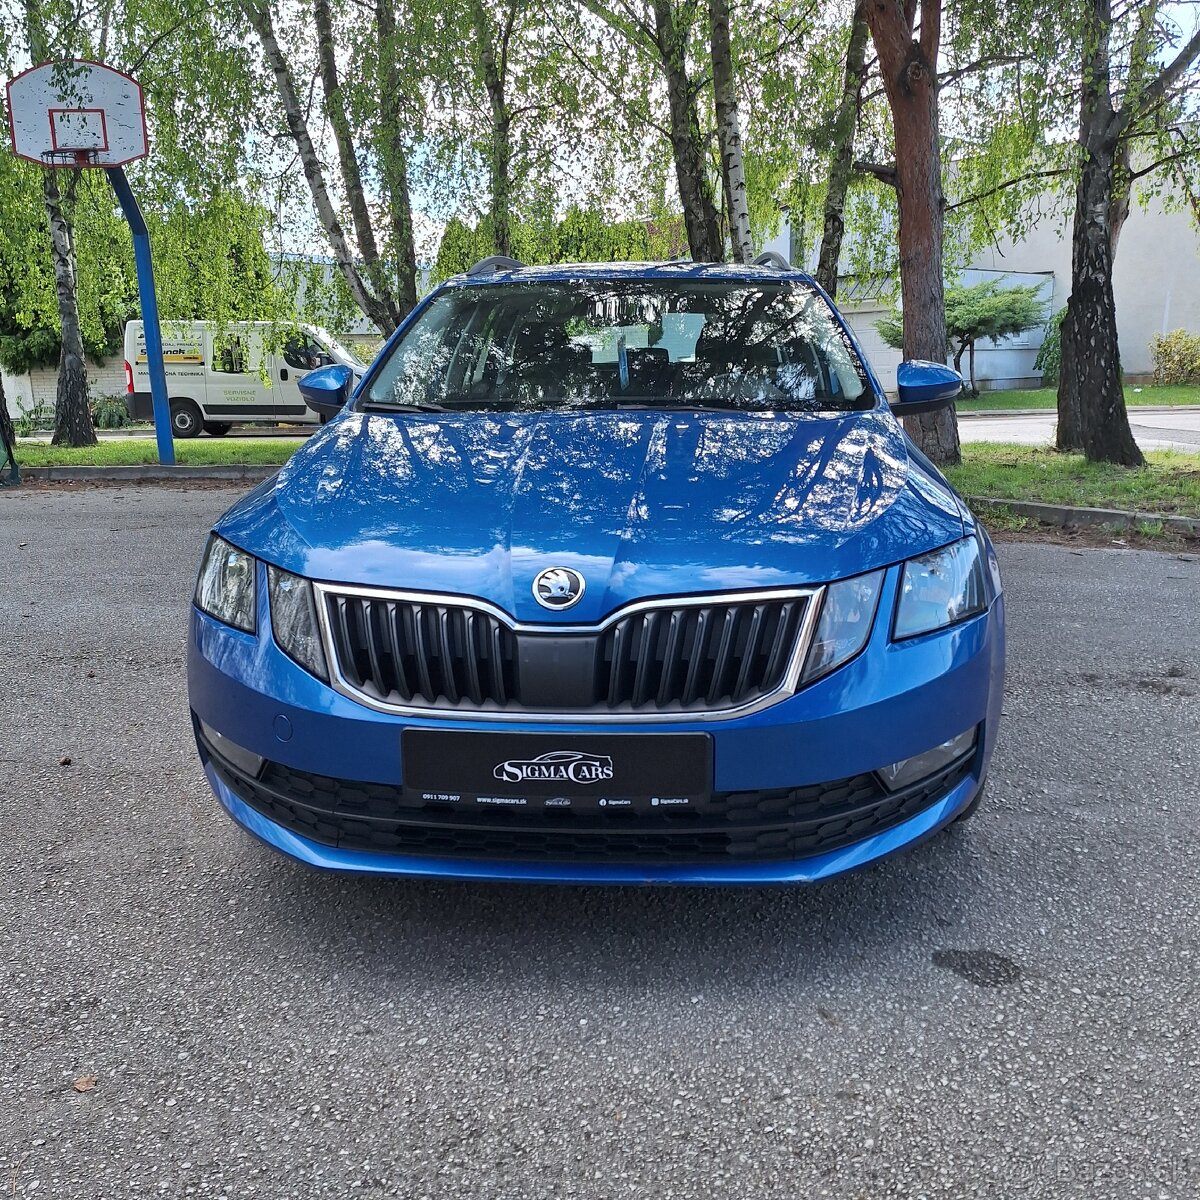 Škoda Octavia III facelift